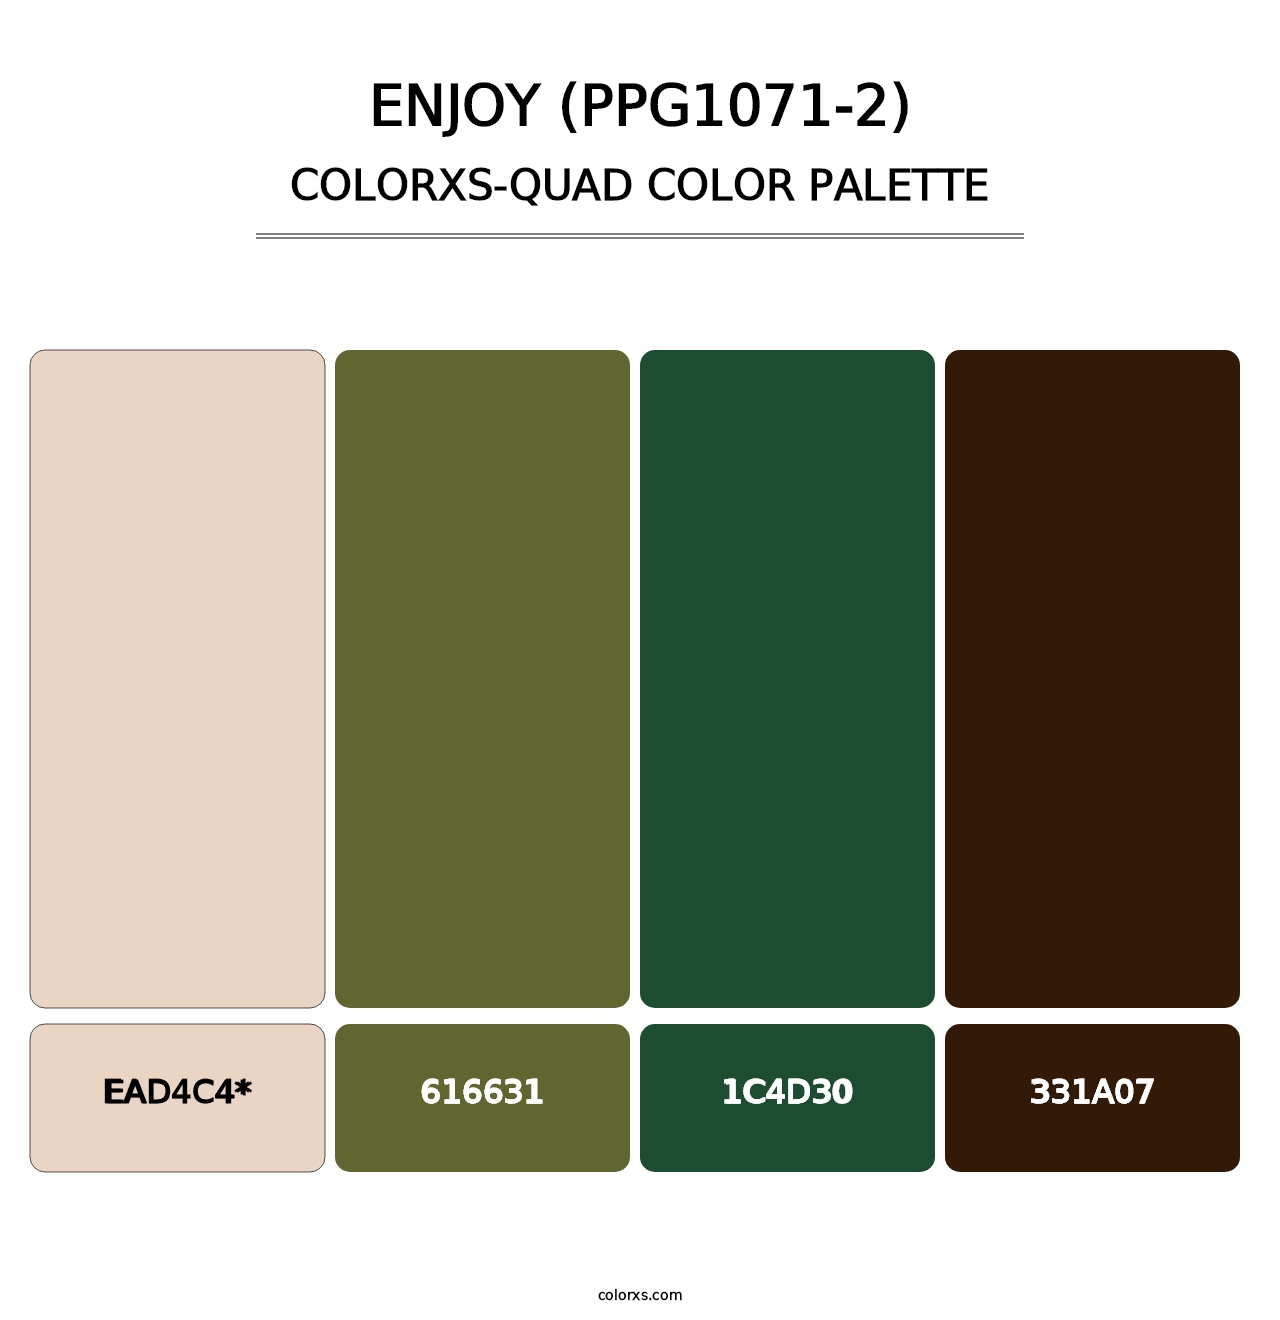 Enjoy (PPG1071-2) - Colorxs Quad Palette